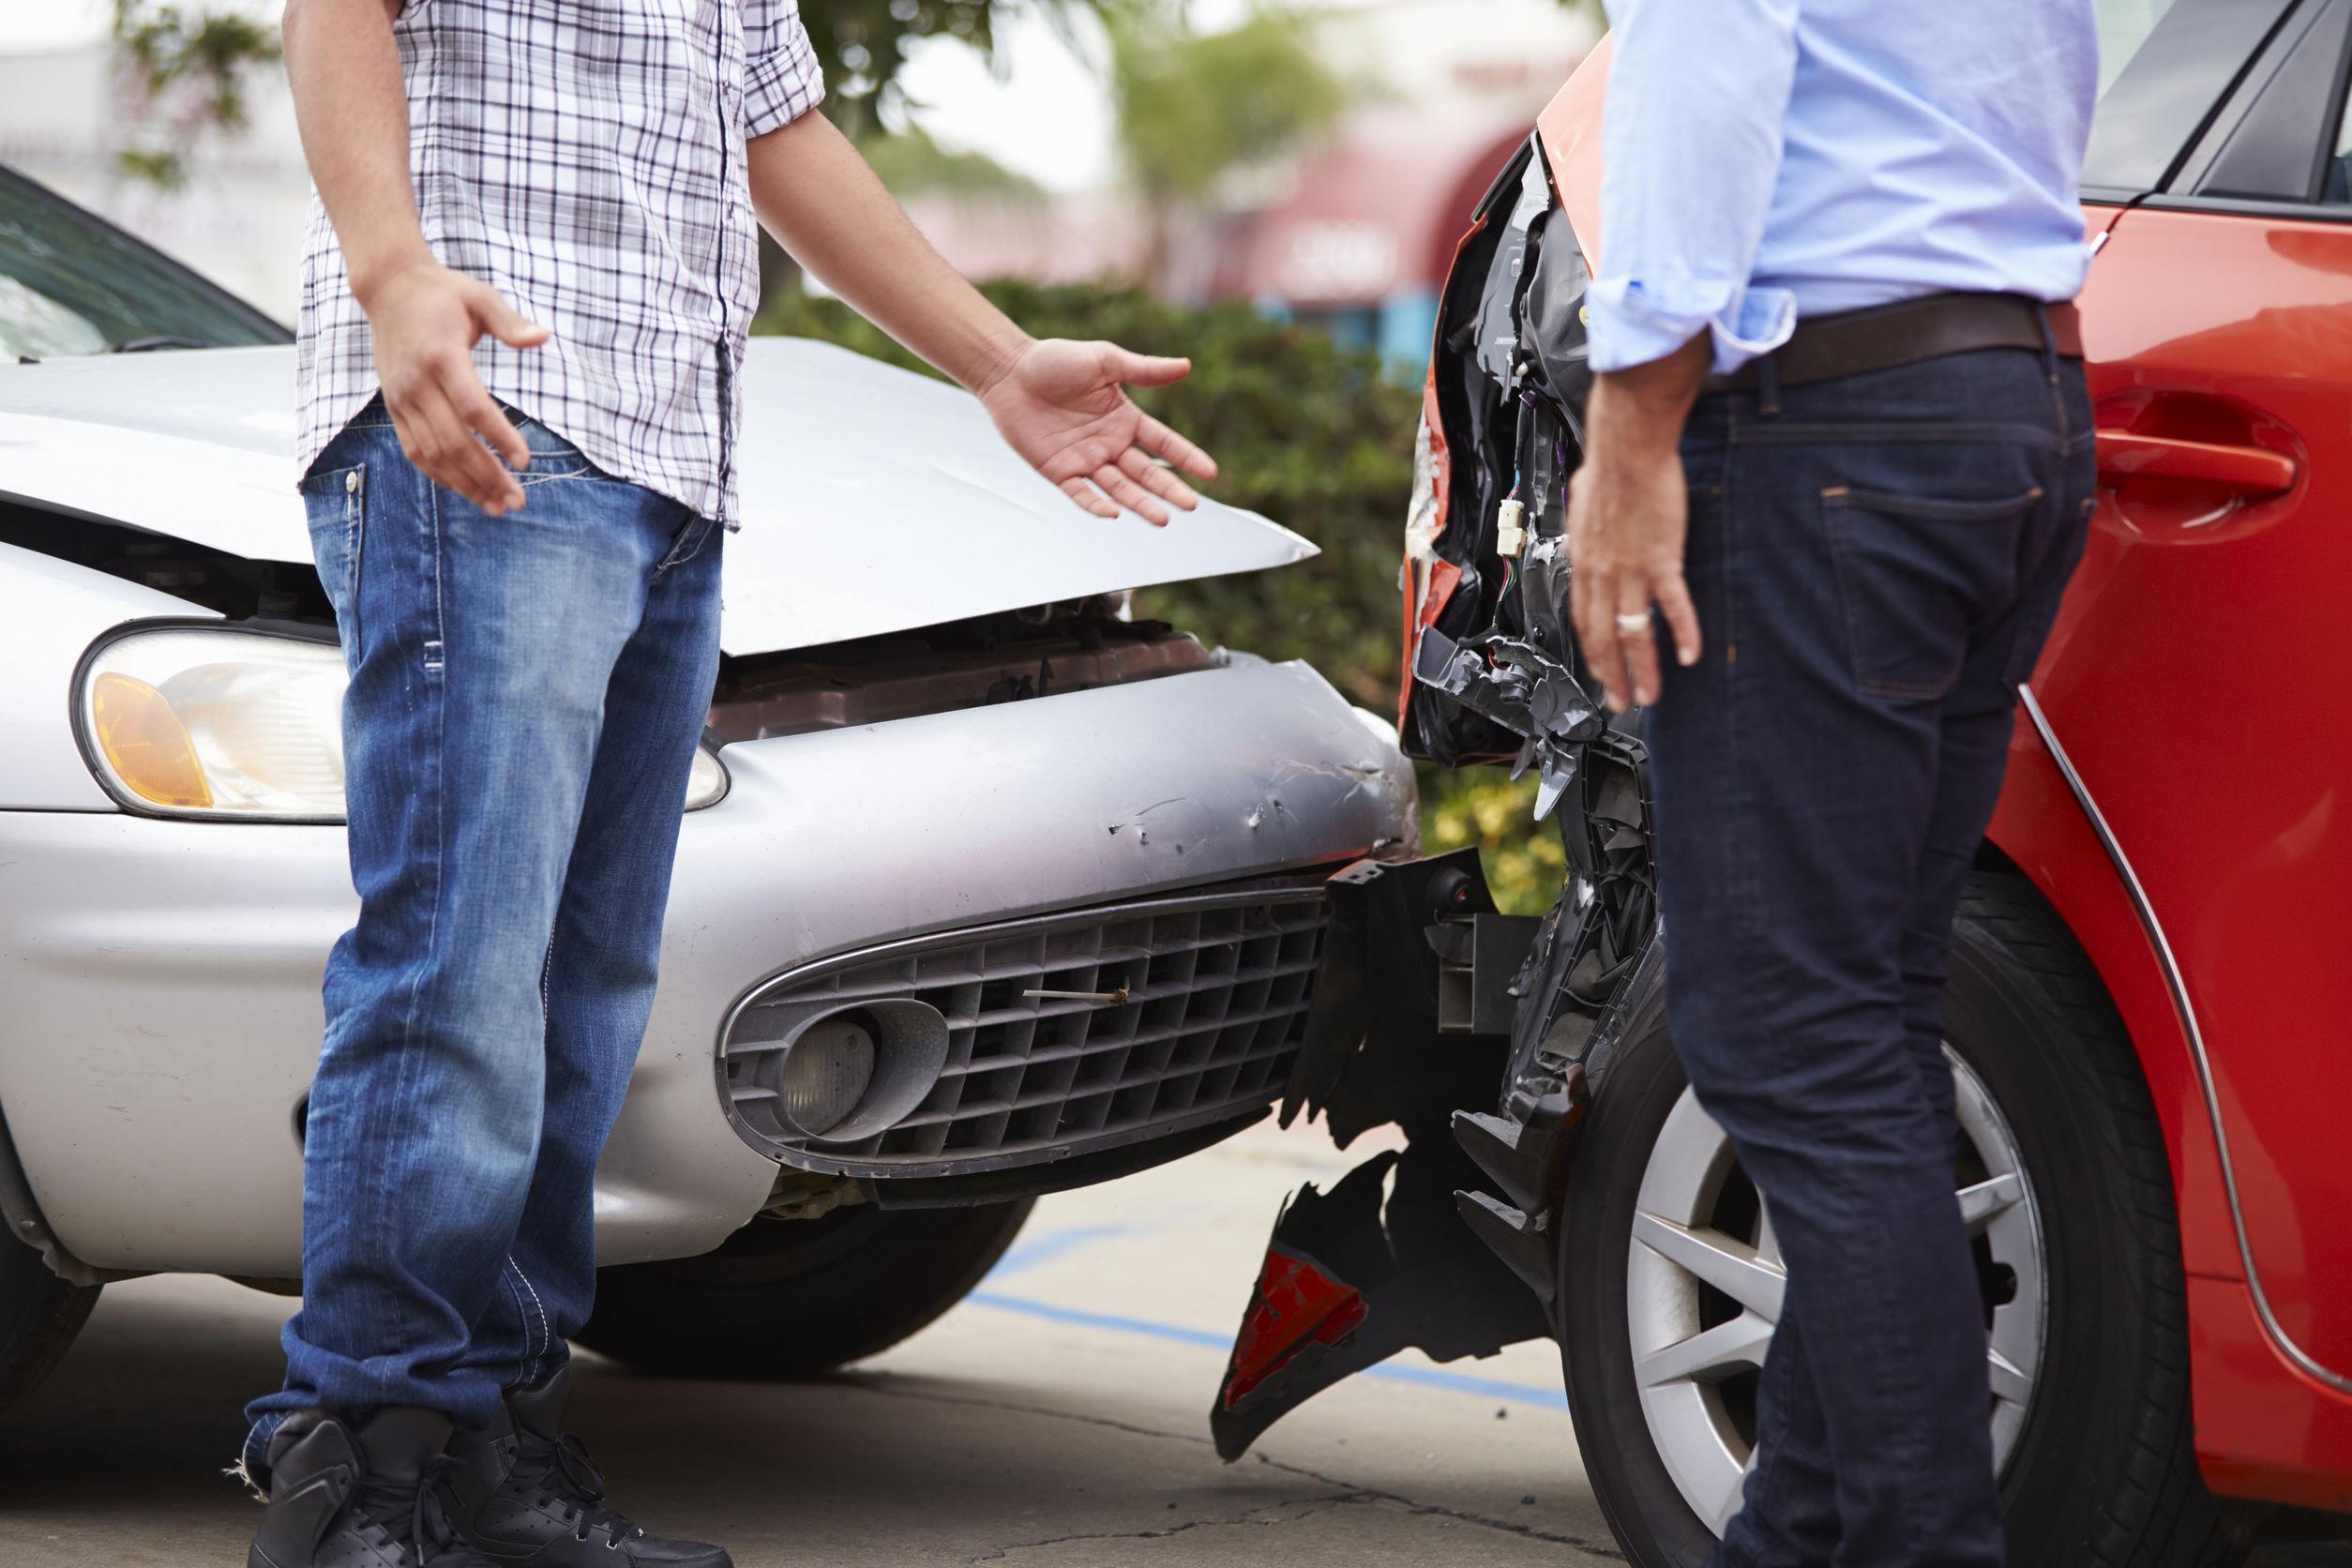 Perché negli incidenti stradali è più facile dare la colpa agli altri?